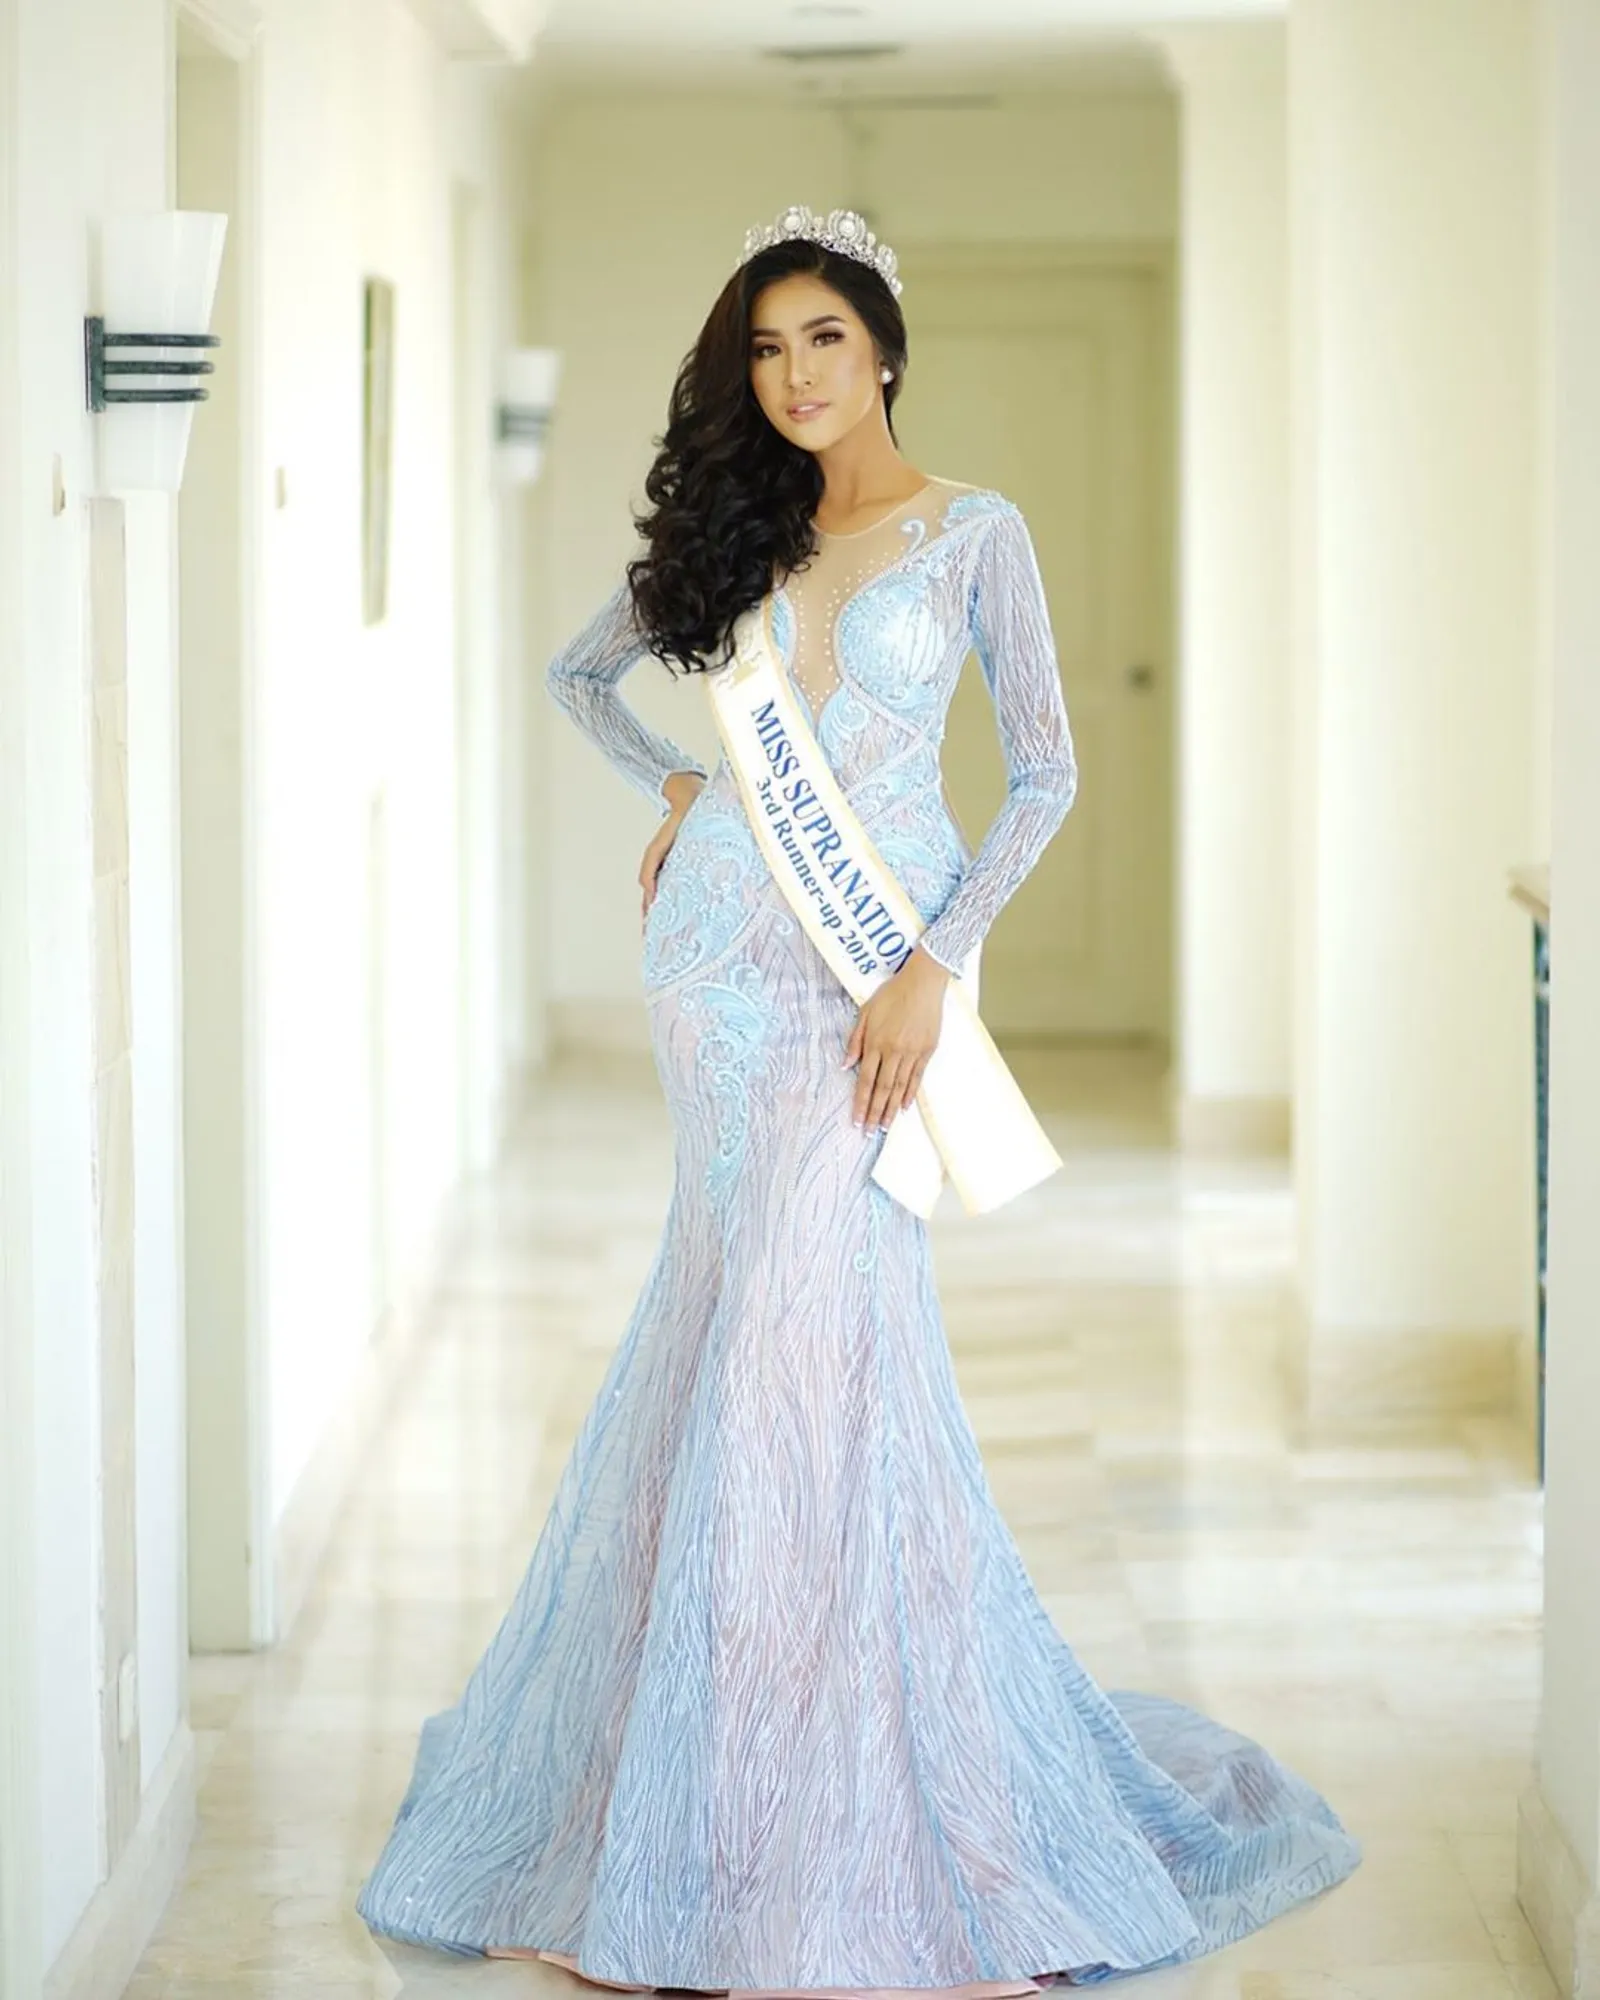 Kiprah Indonesia di Ajang Miss Supranational Selama 5 Tahun Terakhir